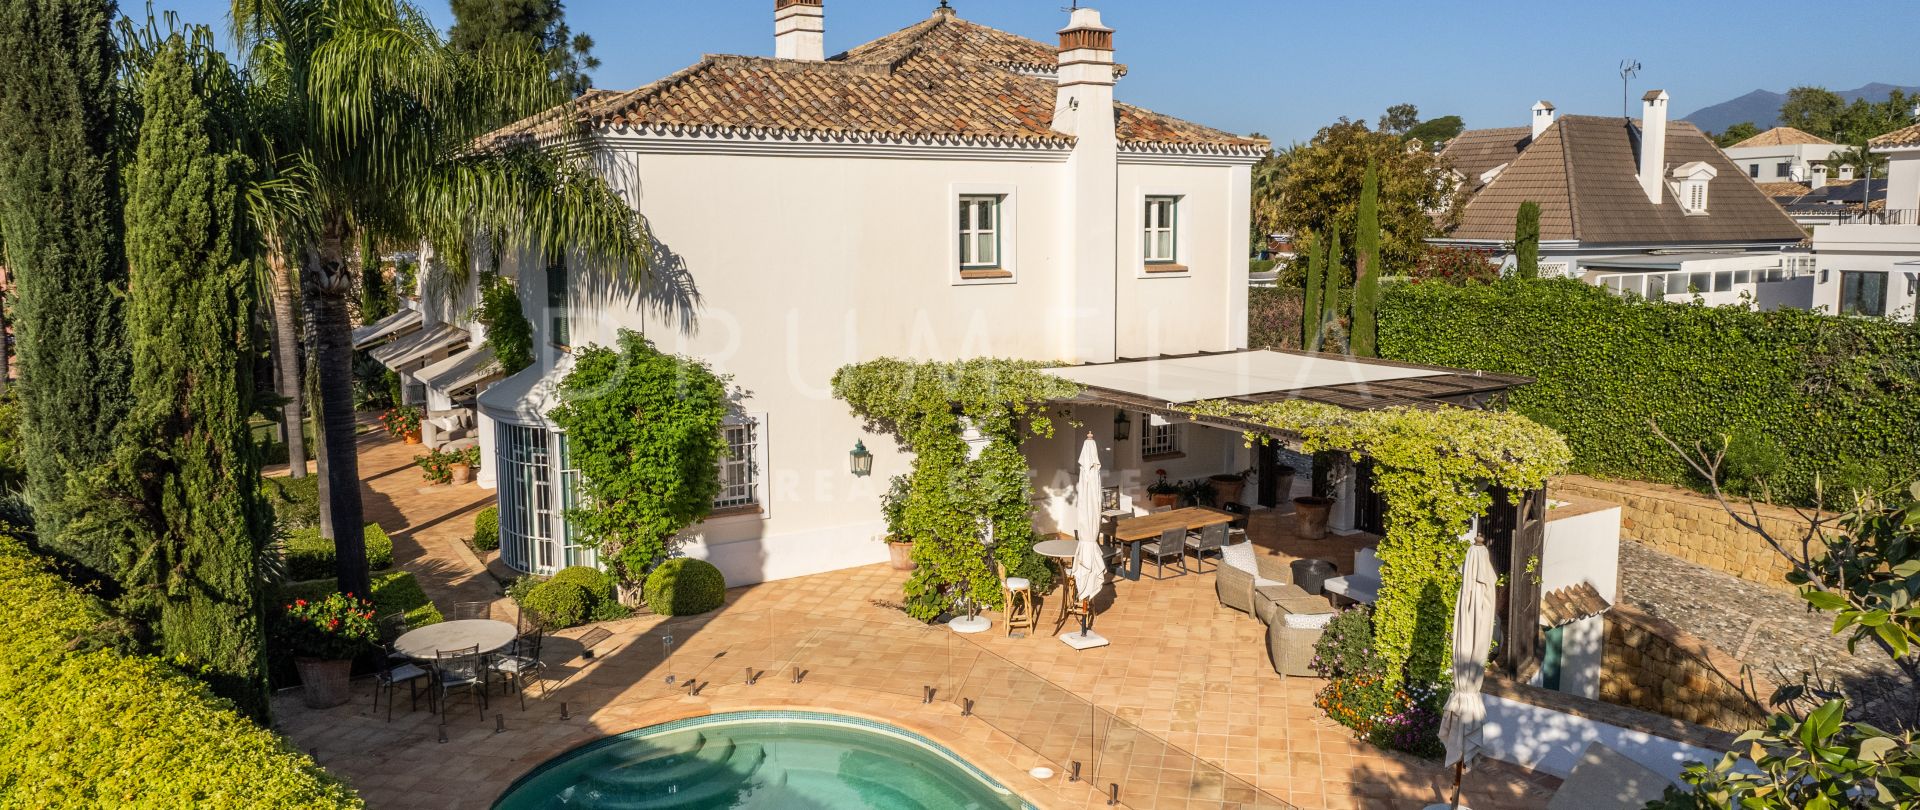 Charmig villa i traditionell andalusisk stil i hjärtat av Marbella